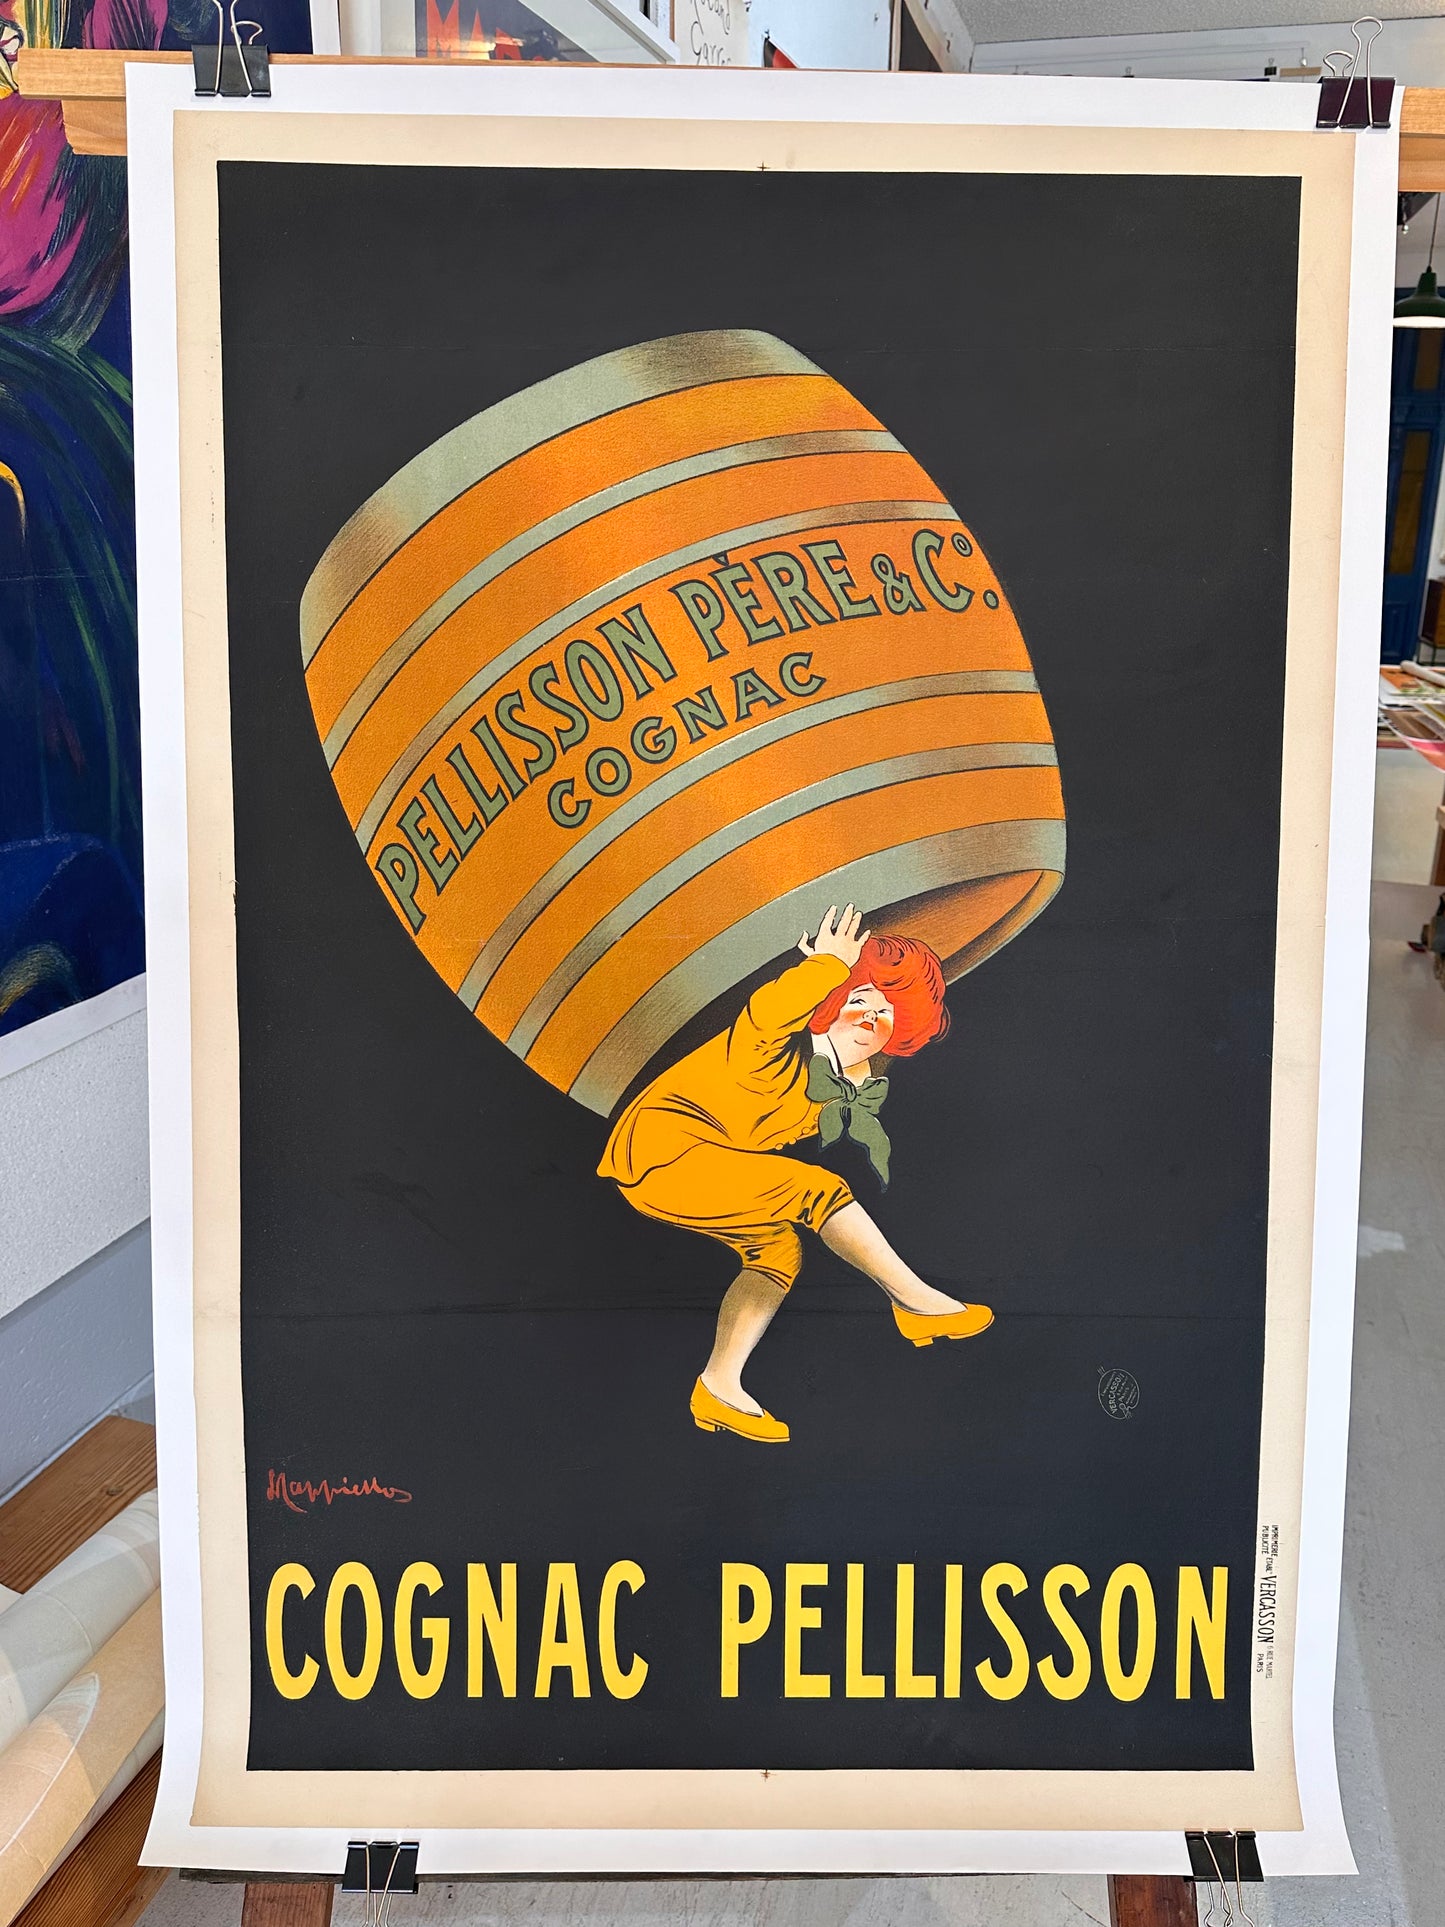 Cognac Pellisson by Capiello (Medium)